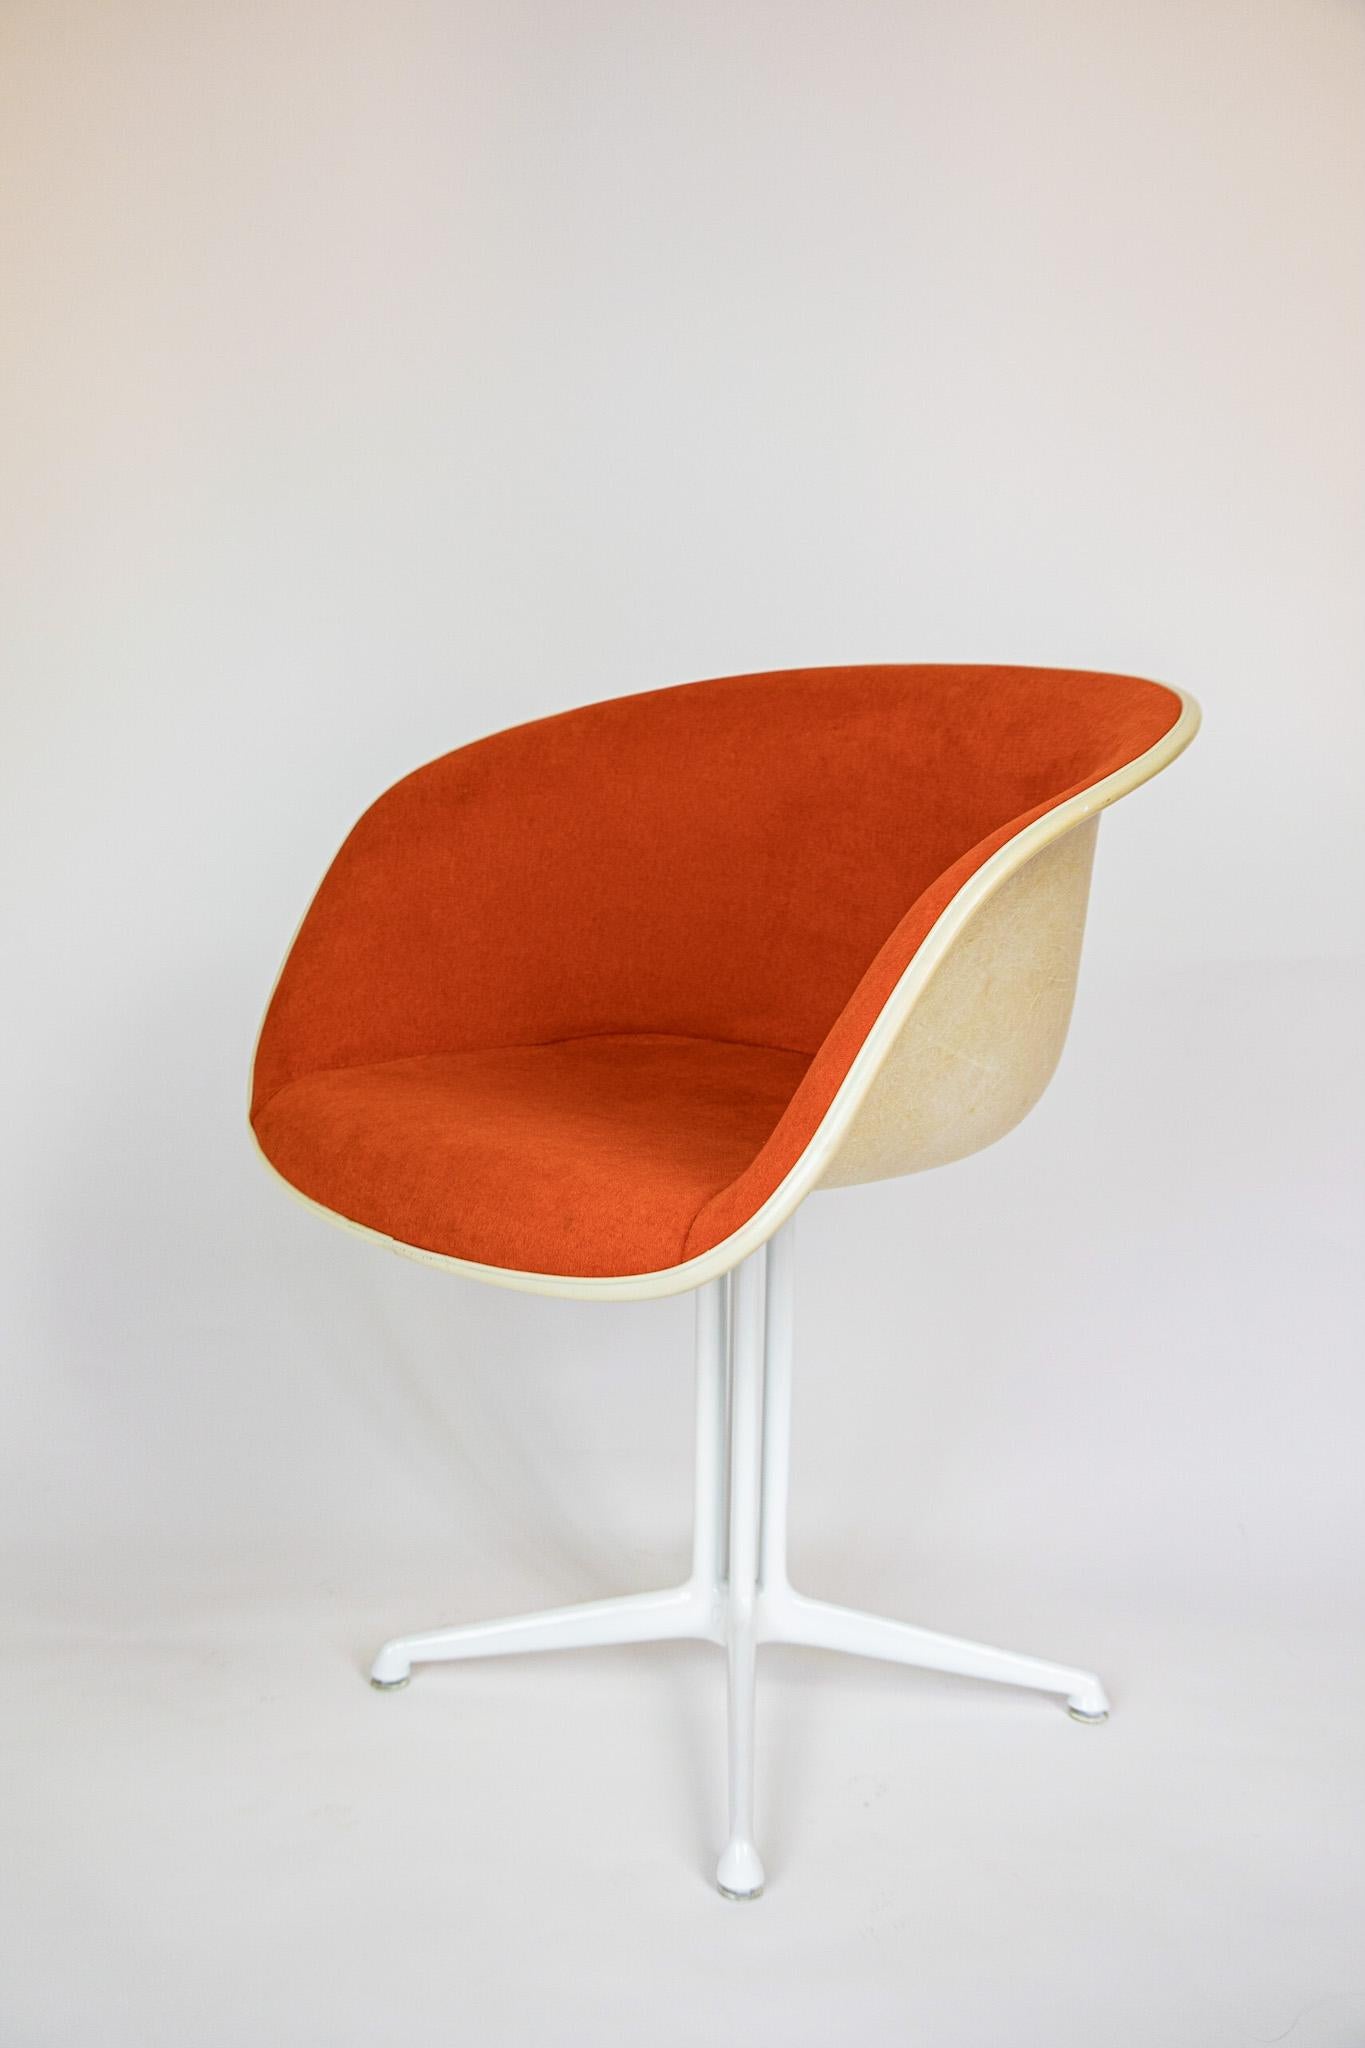 Midcentury Esszimmerstühle La Fonda von Eames für Vitra, orange, Fiberglas, 1960er Jahre.

Dieses schöne Set aus zwei La Fonda-Sesseln ist der absolute Blickfang in jedem stilvollen Raum. Sie sind mit einem leuchtend orangefarbenen Stoff überzogen